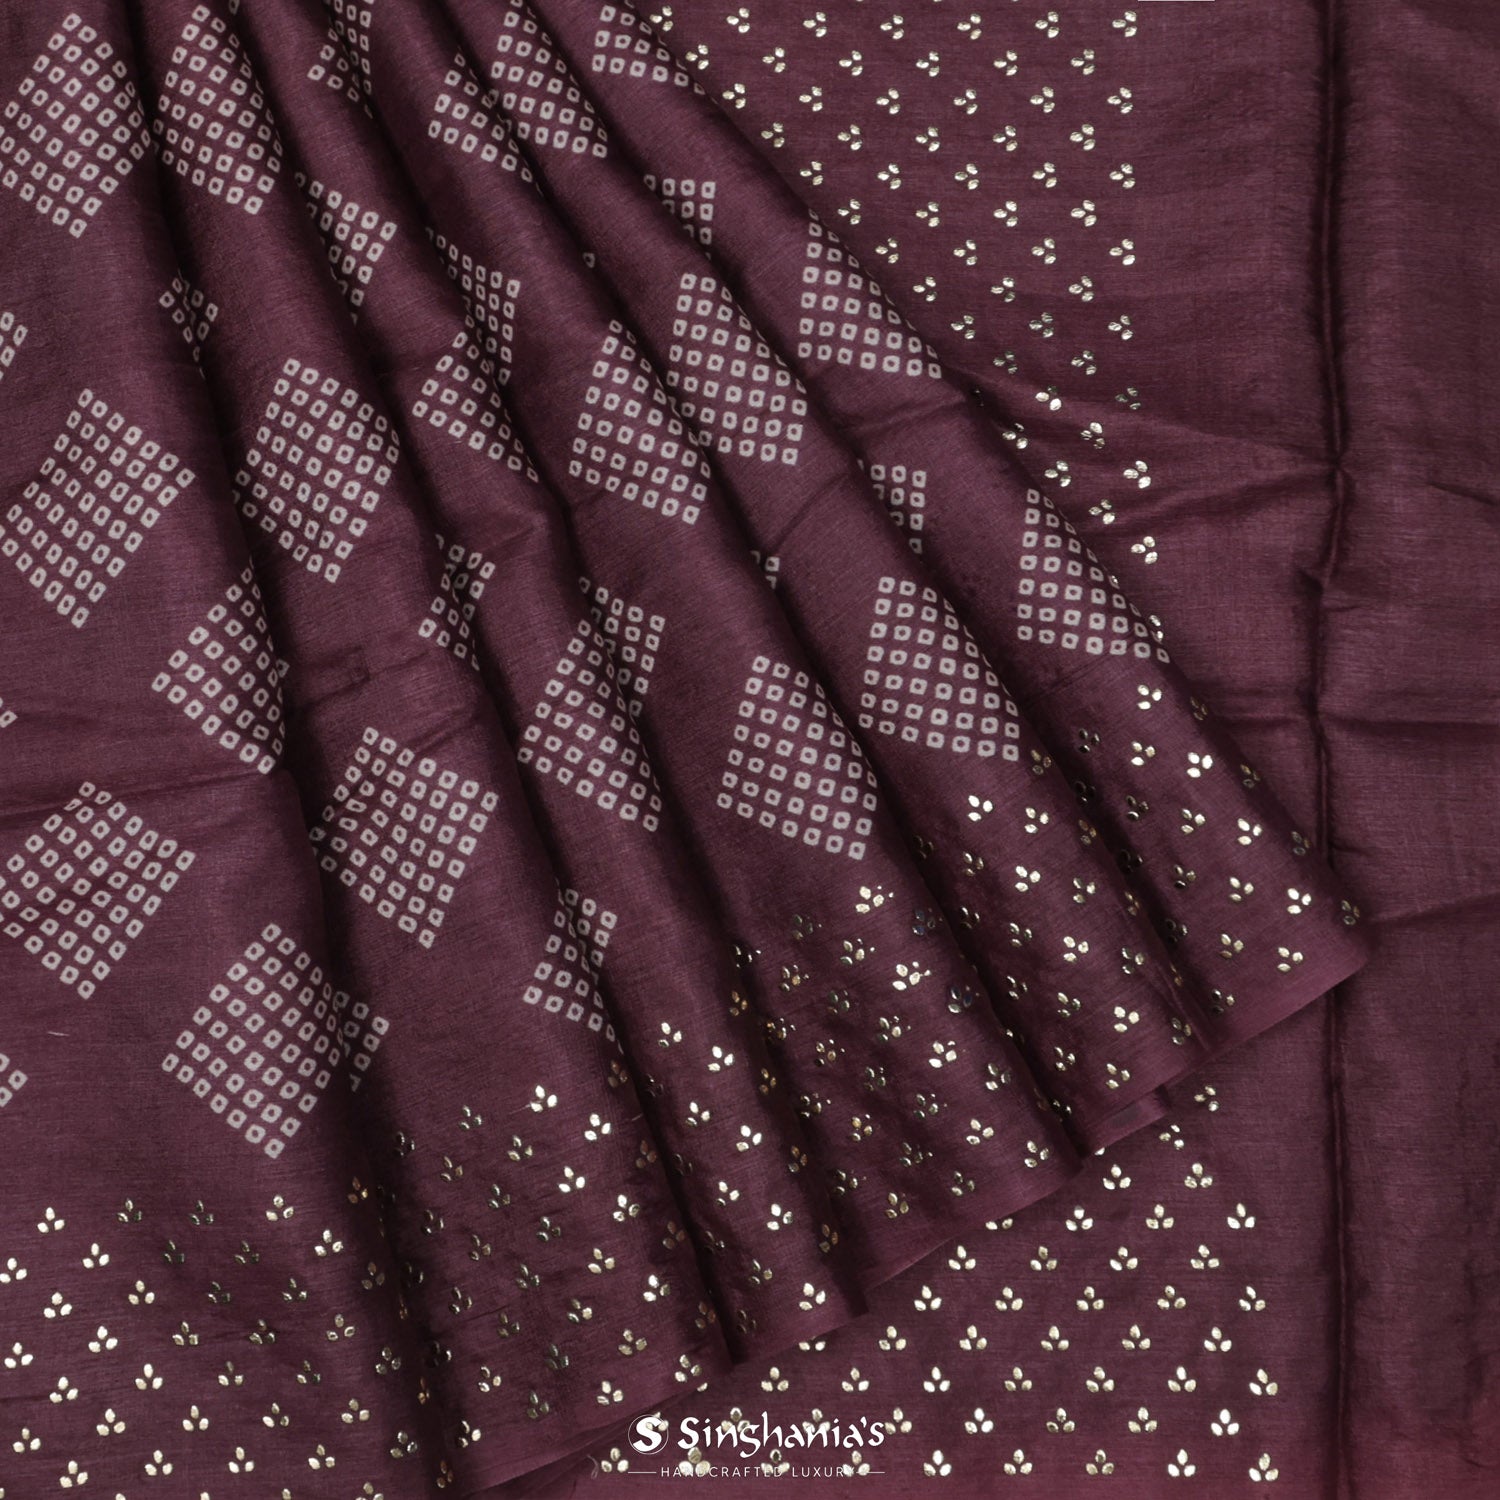 Purple Violet Printed Tussar Saree With Mukaish Work